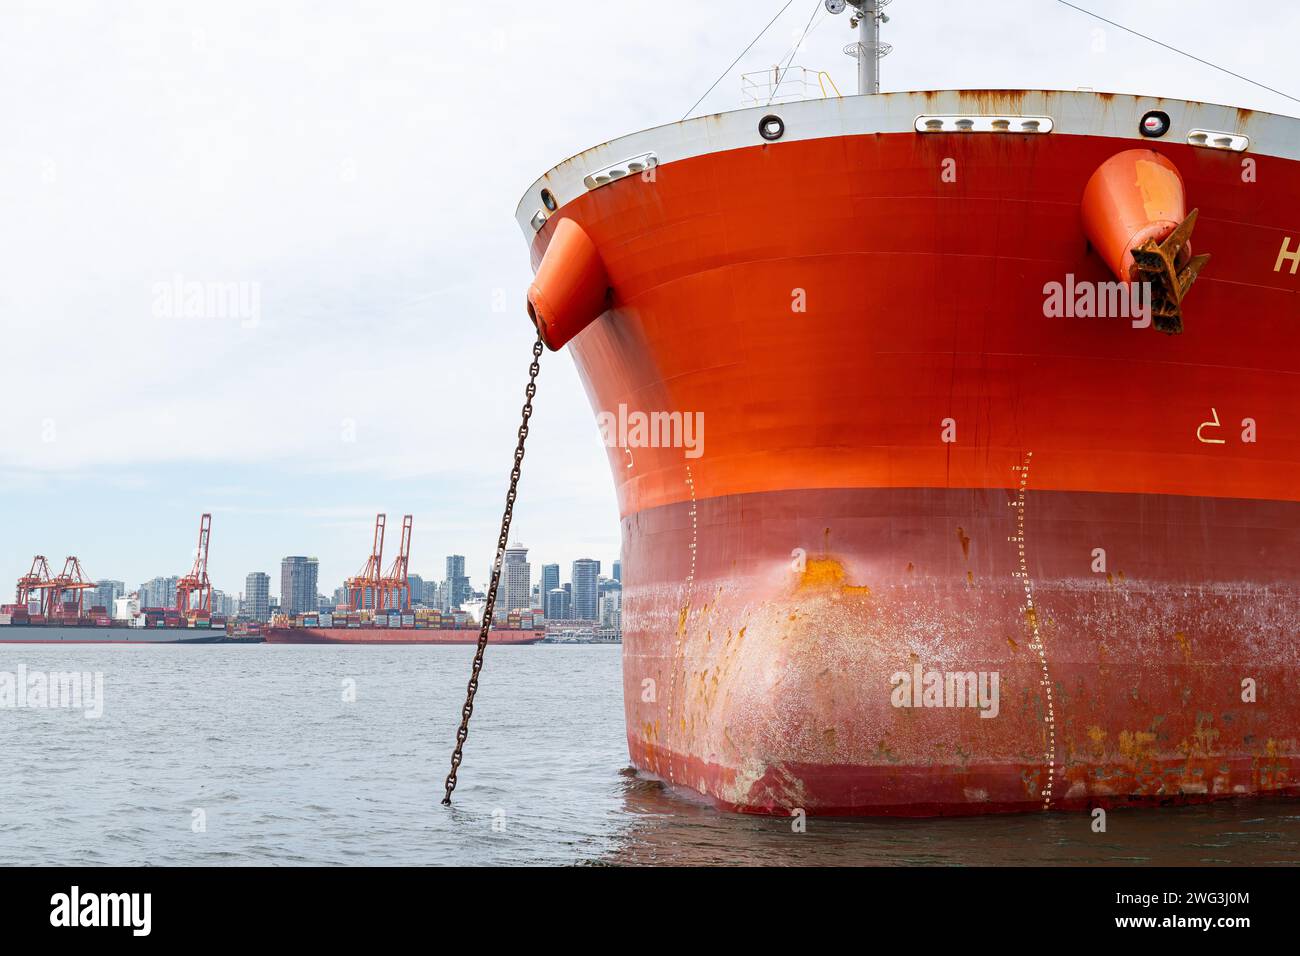 La proa de un buque de contenedores que está anclado en el puerto de Vancouver con el horizonte de Vancouver, Columbia Británica en el fondo. Foto de stock